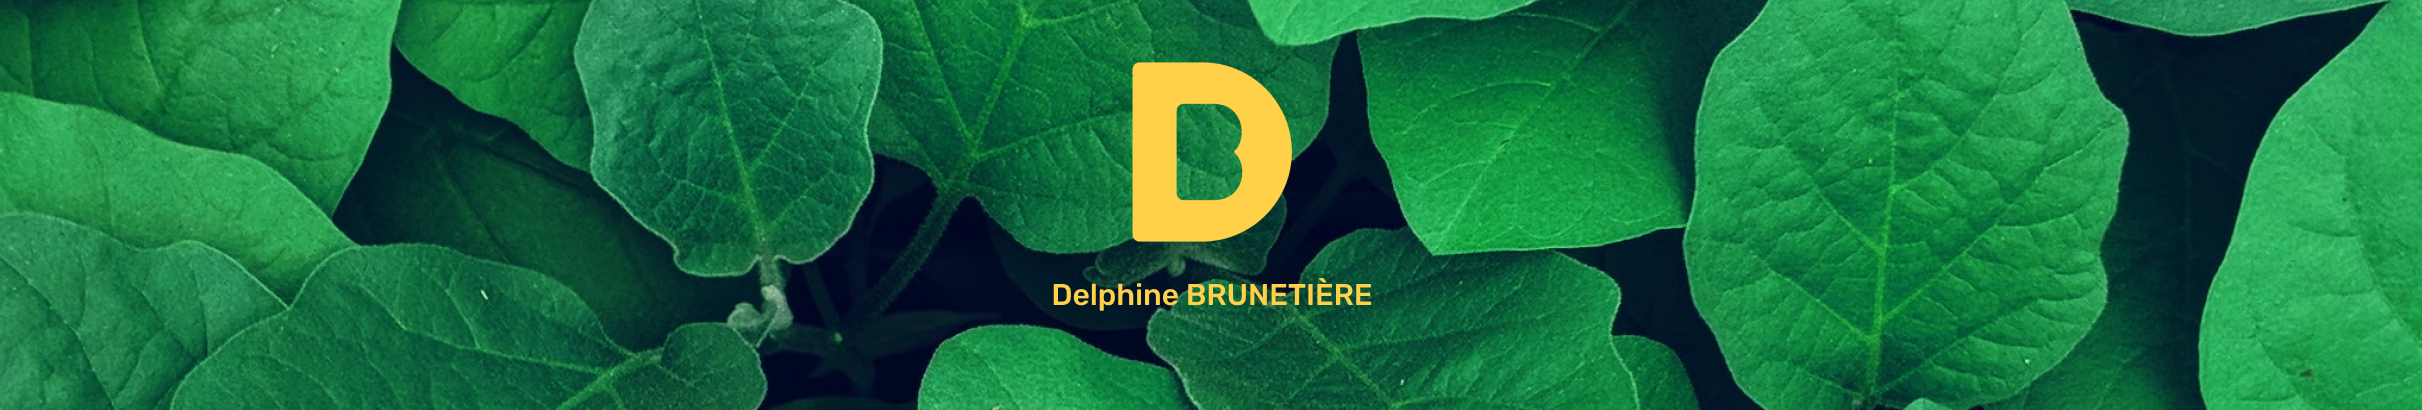 Delphine Brunetière's profile banner